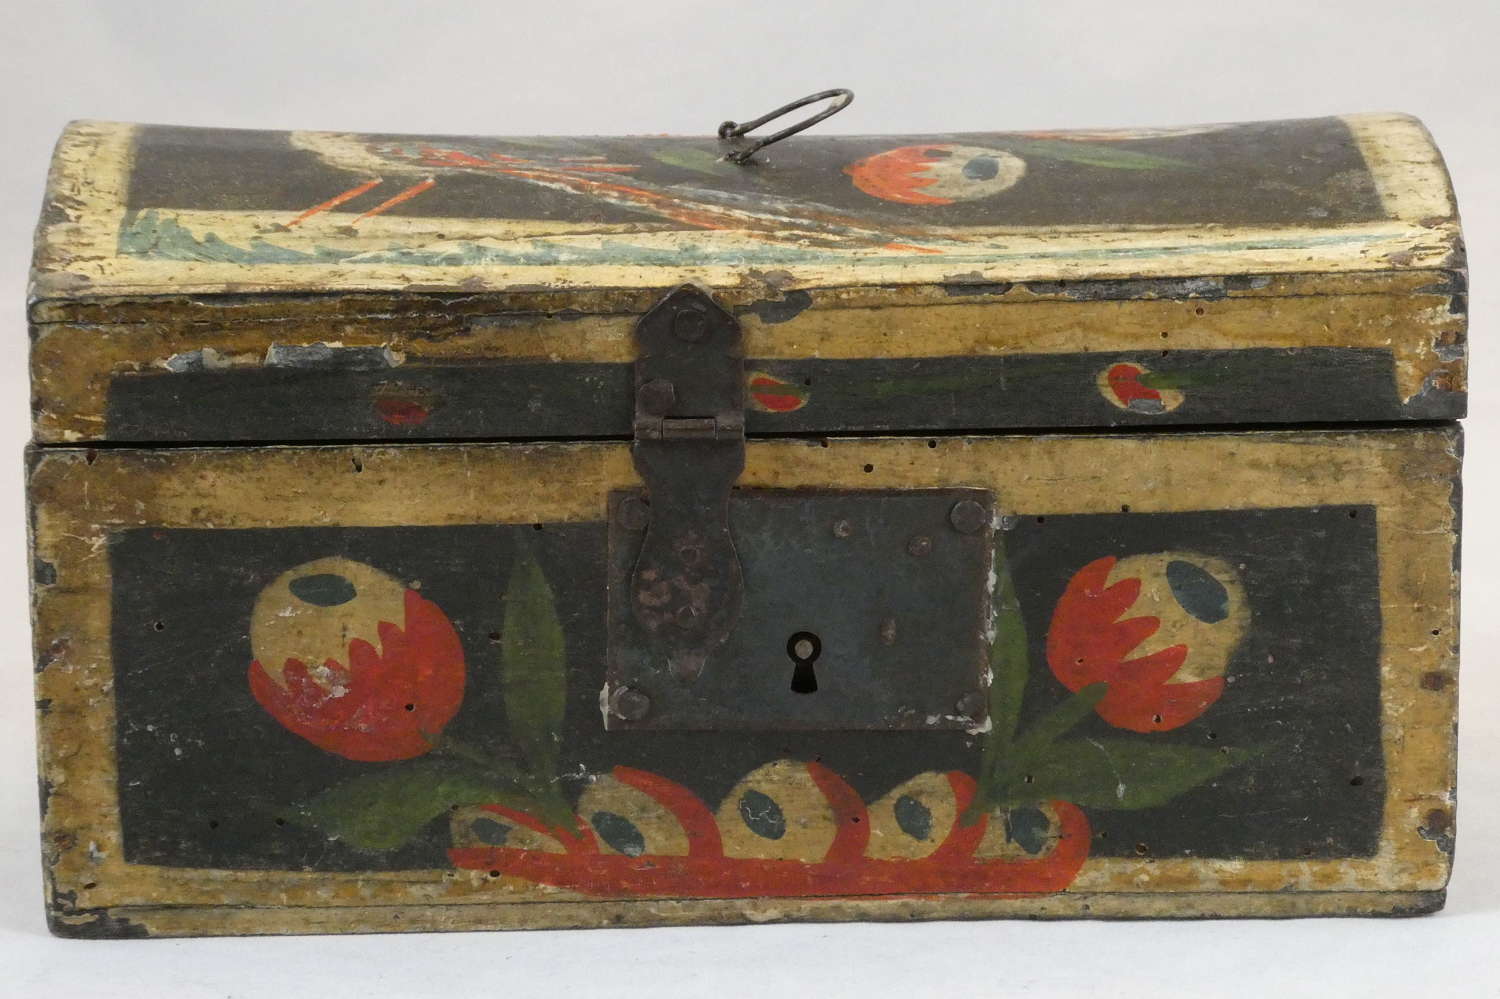 Painted Box, circa 1800